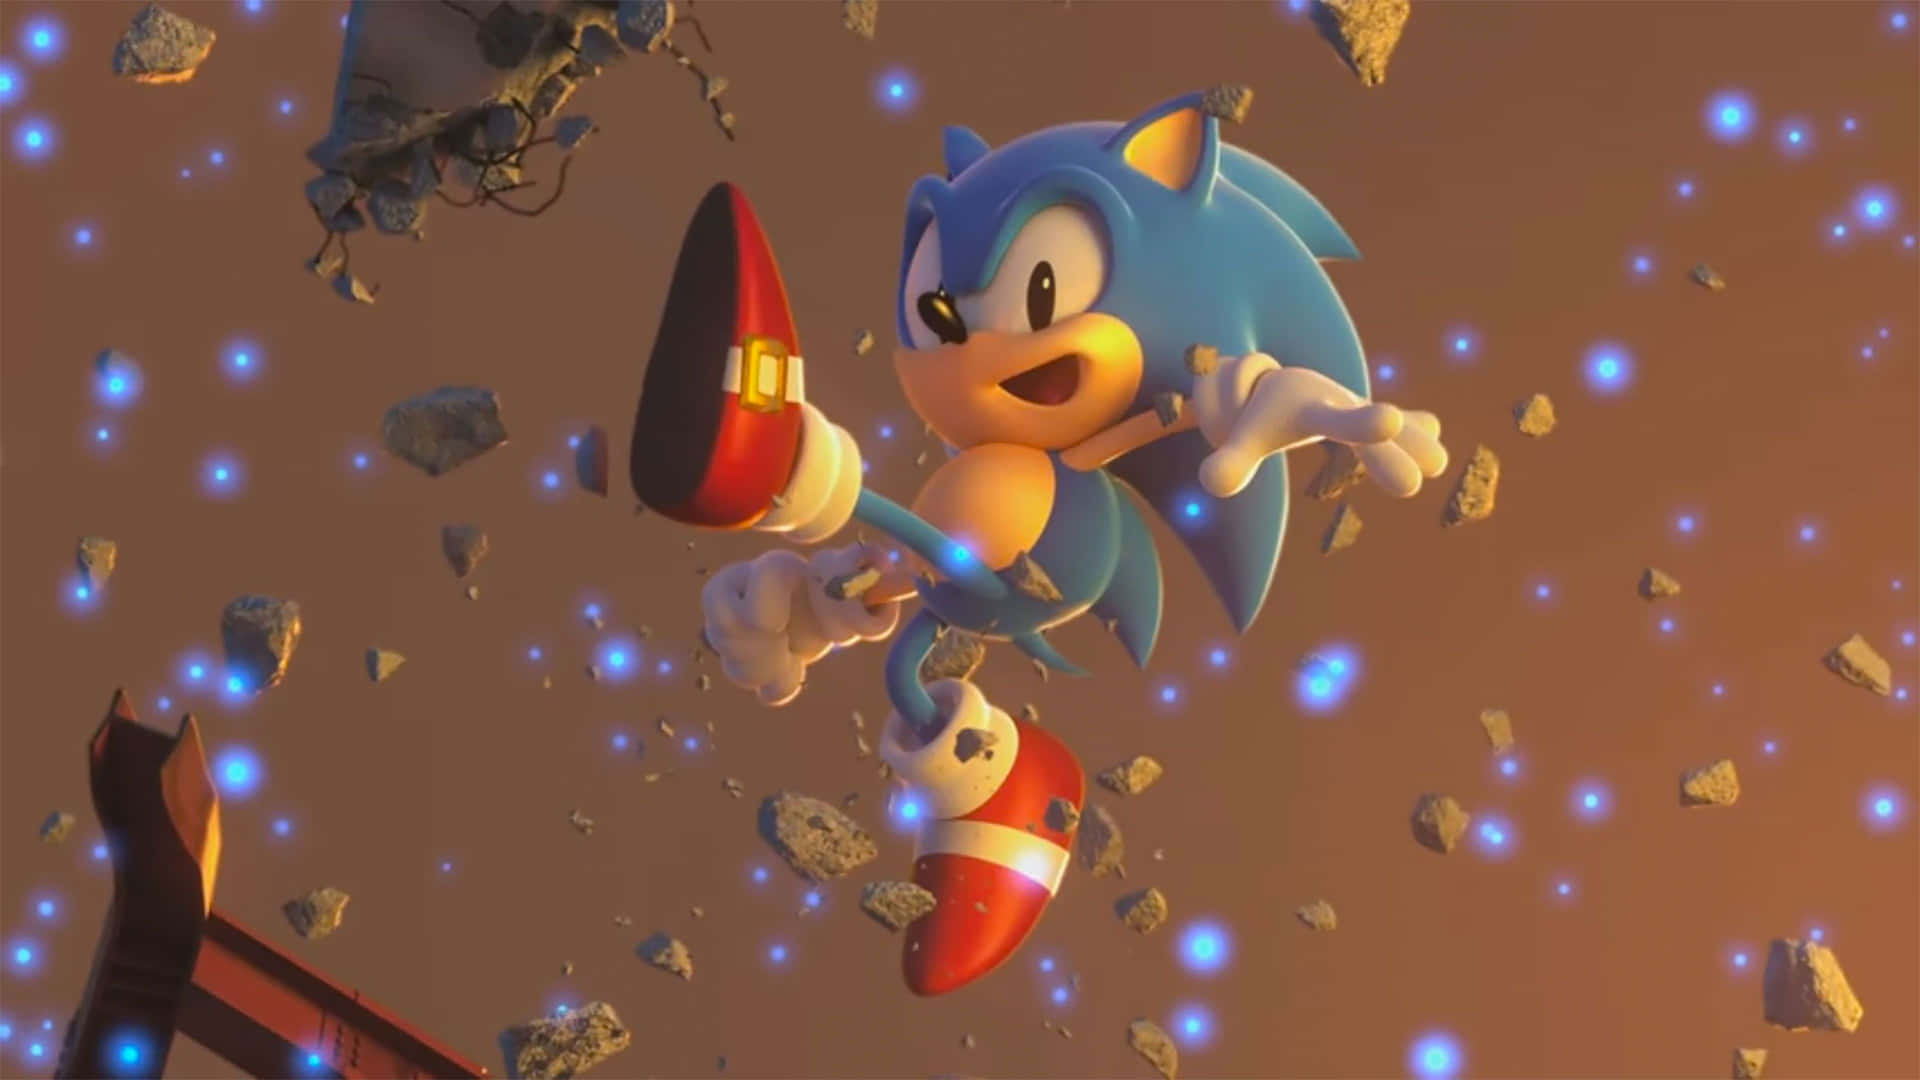 Sonic The Hedgehog 4K i aktion. Wallpaper